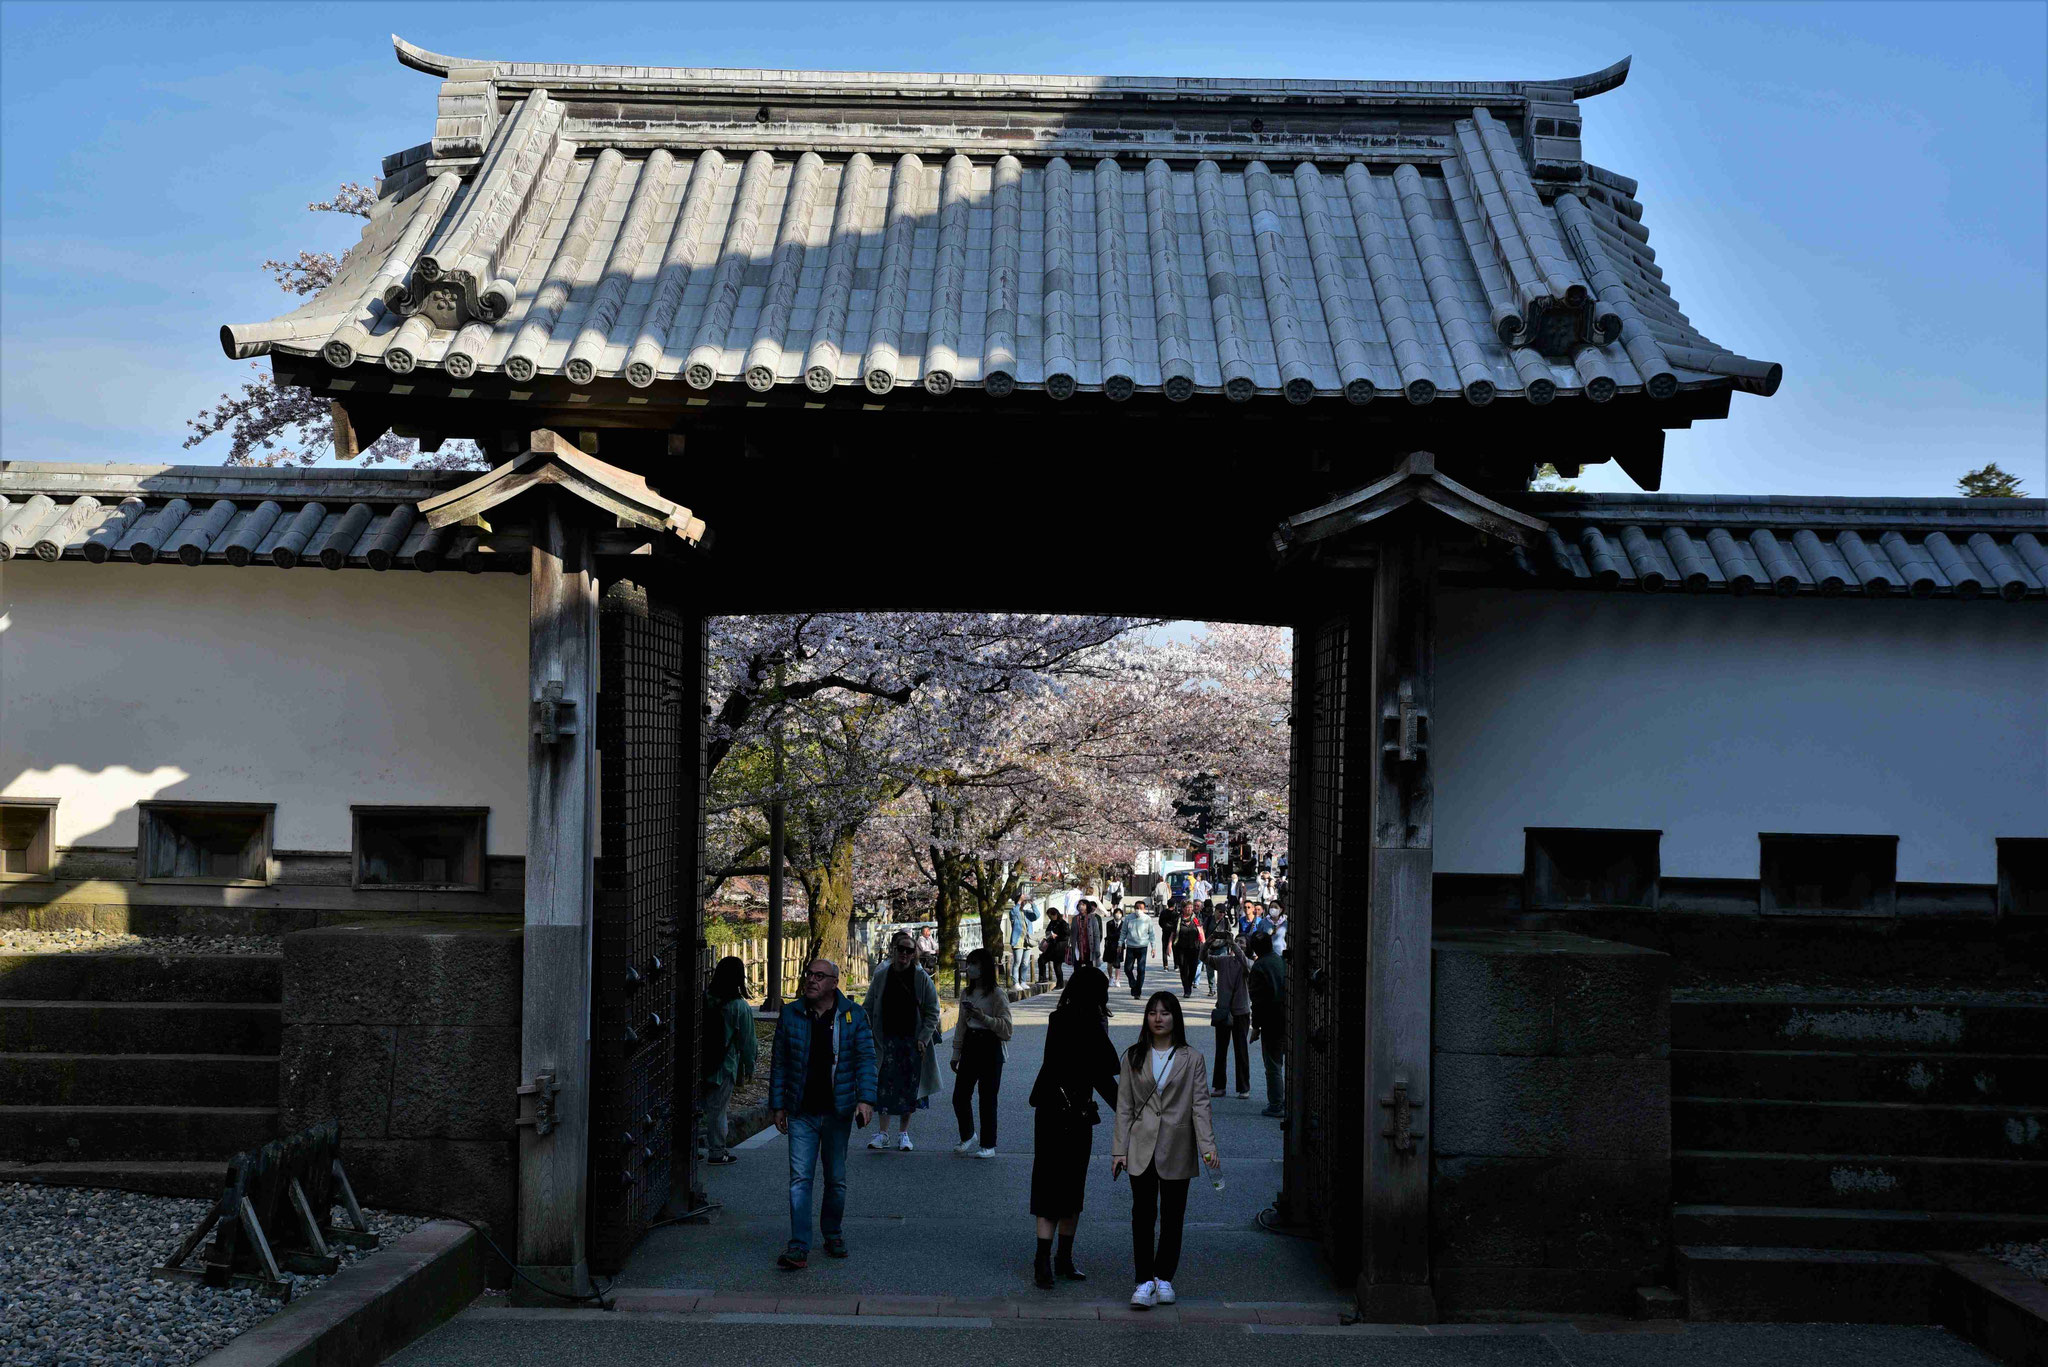 Eingang in die Burg von Kanazawa - relativ menschenleer